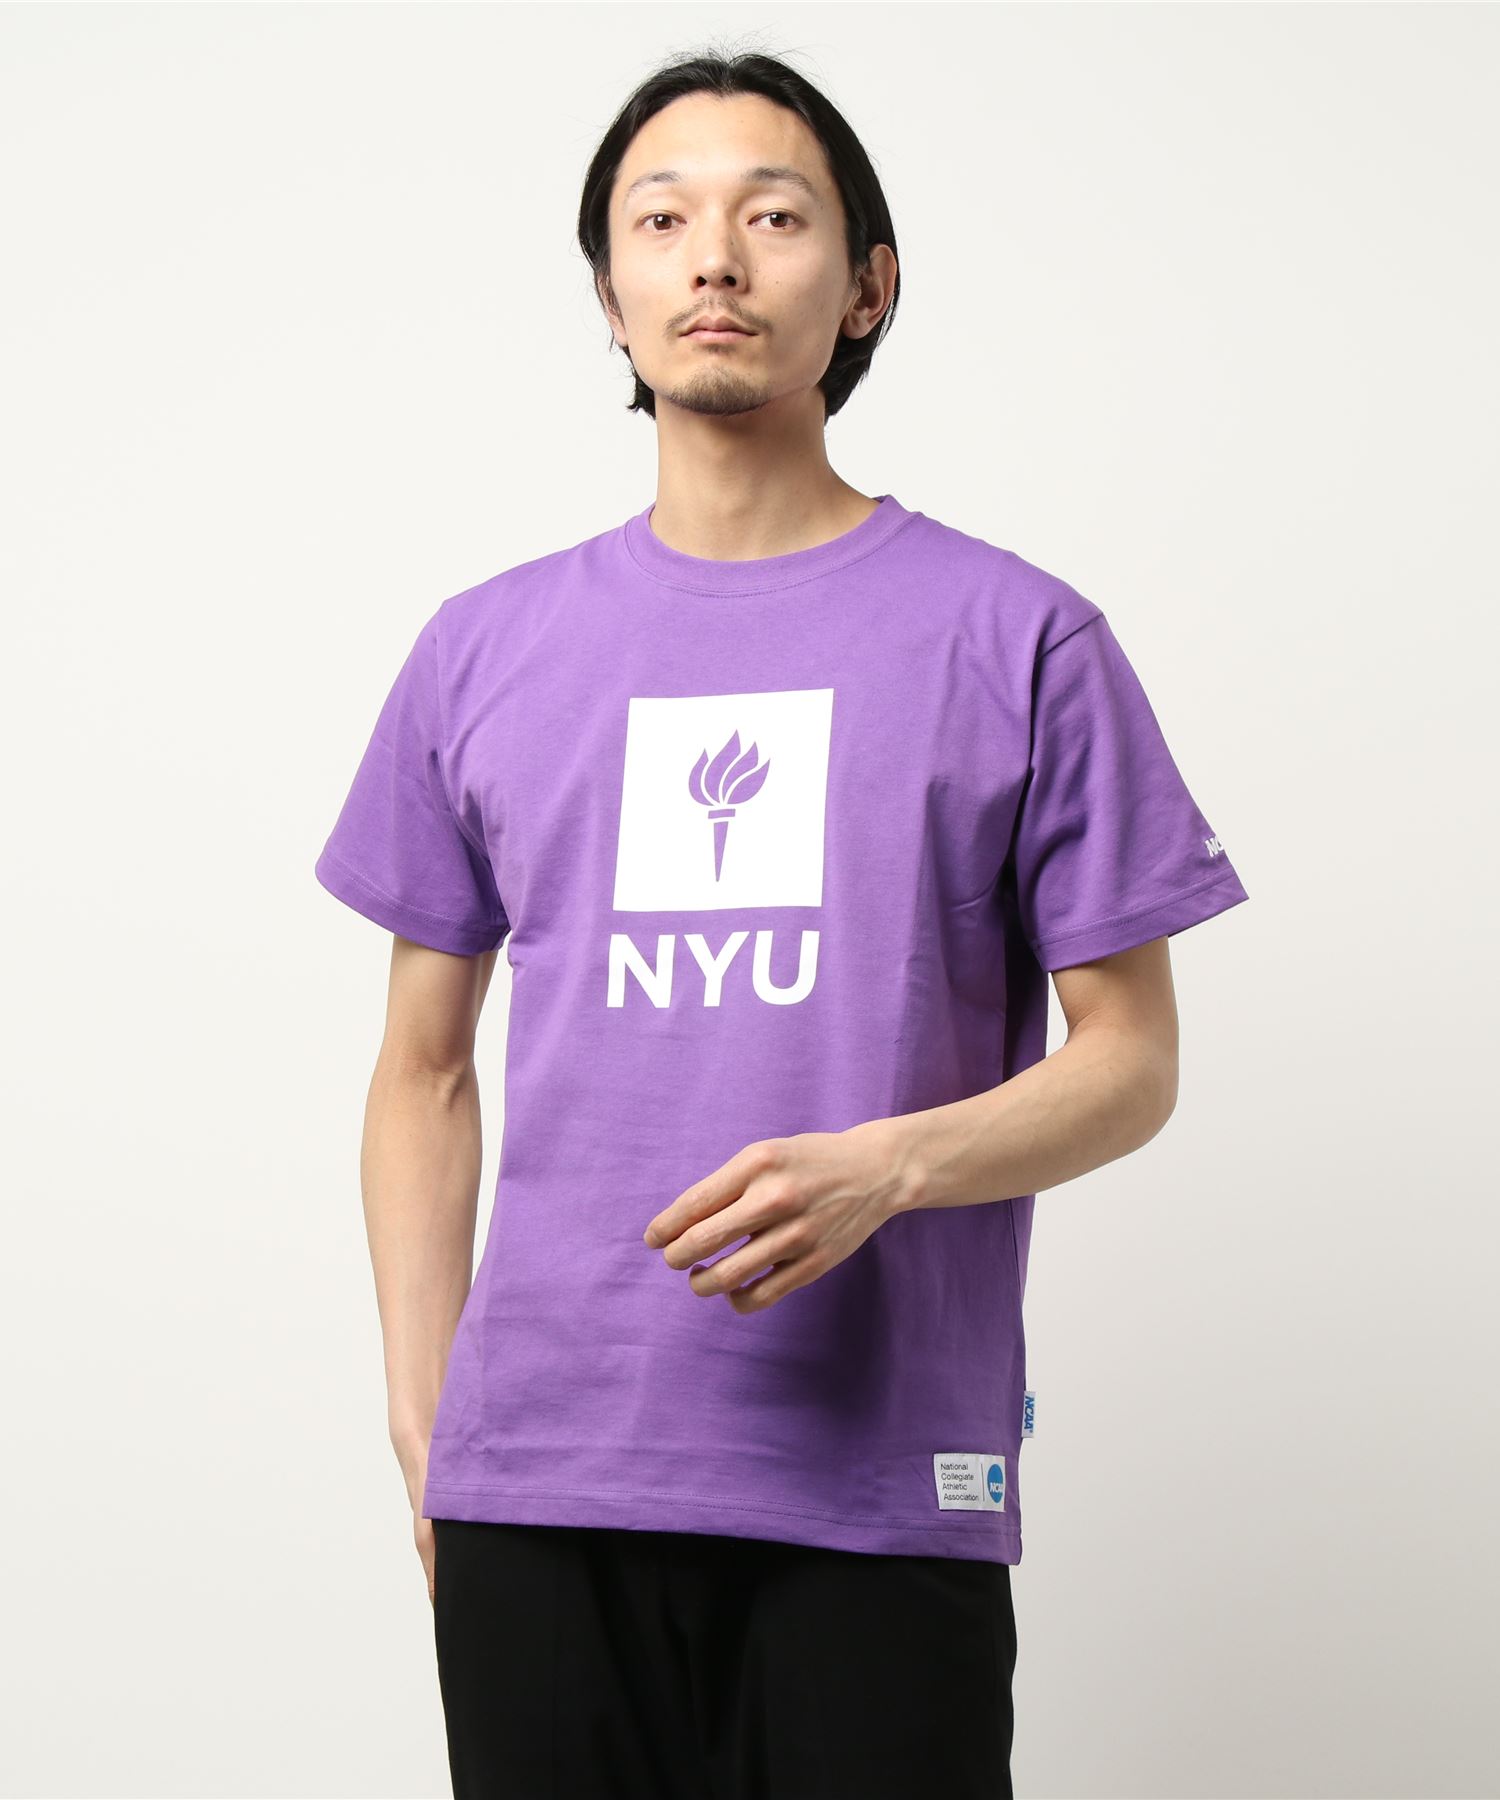 A BAG OF CHIPSNCAA 2021年レディースファッション福袋 Tシャツ NYU 人気ブランドの新作 エヌシーエーエー